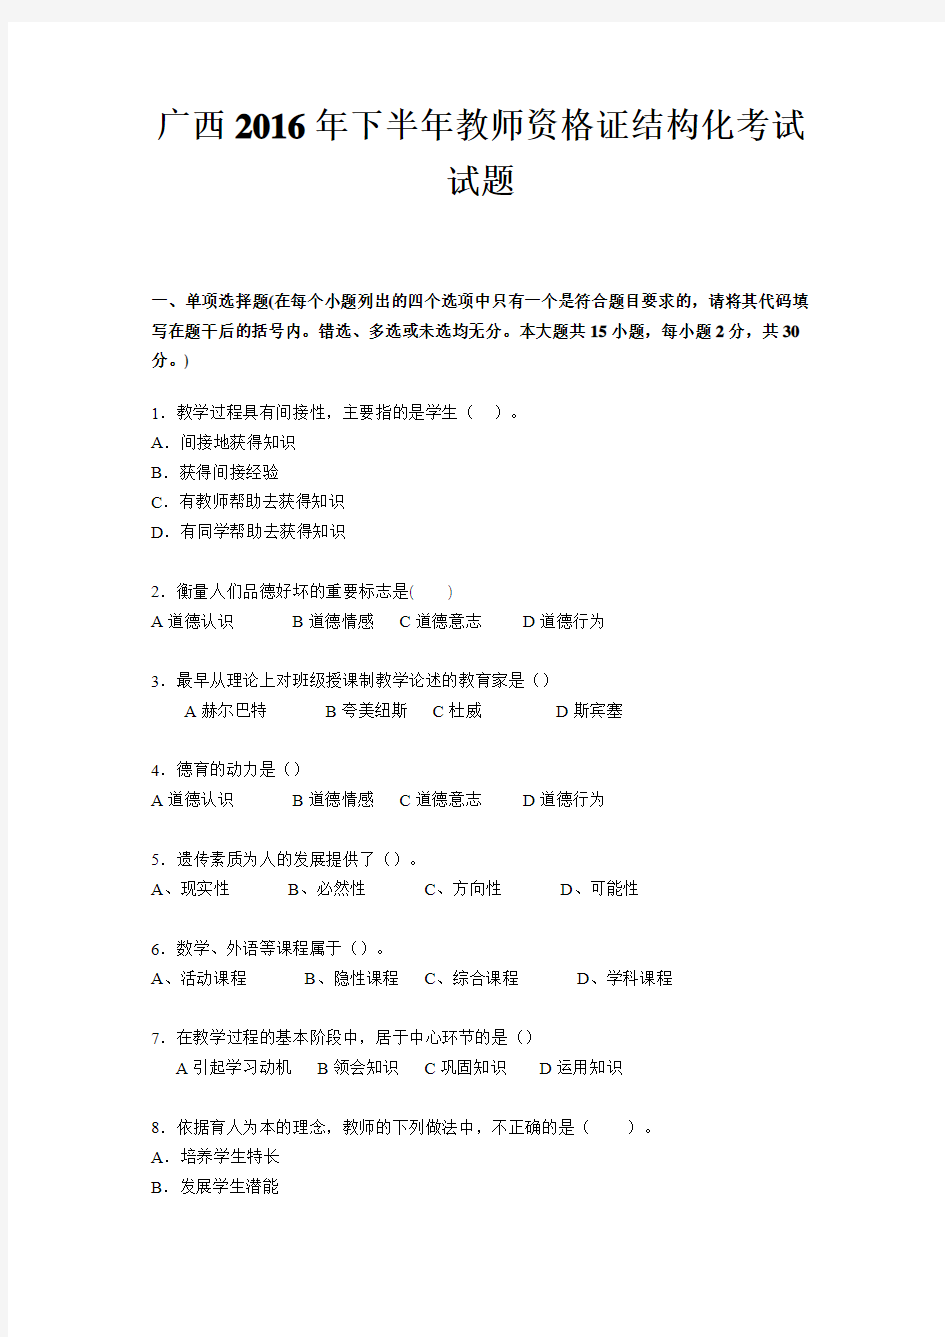 广西2016年下半年教师资格证结构化考试试题